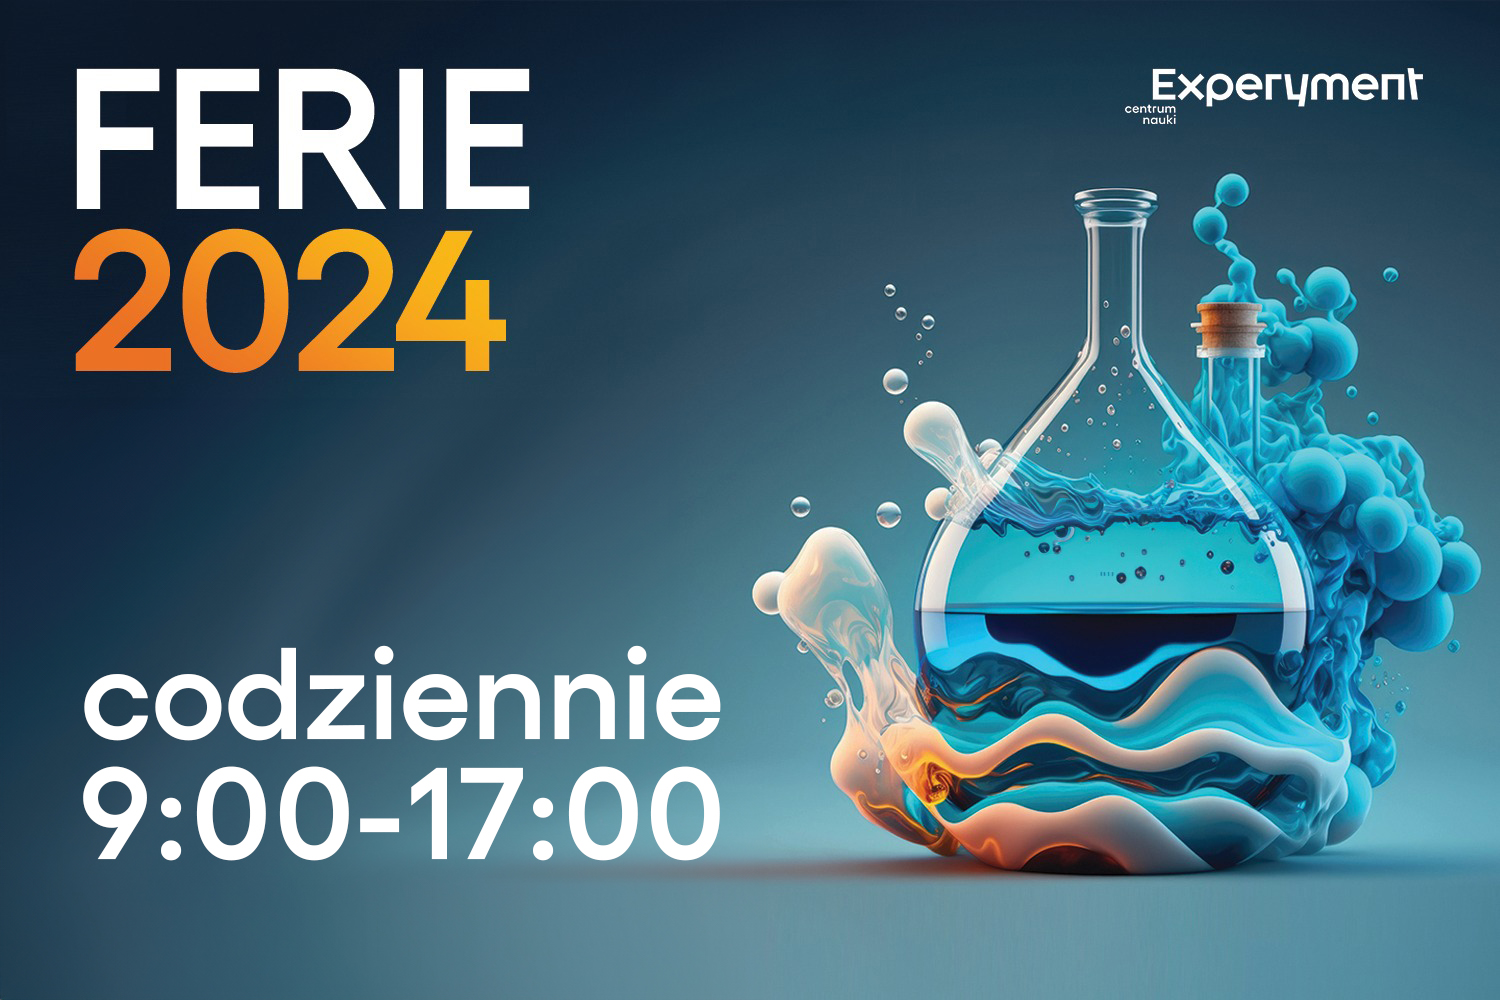 Ferie 2024 2 CN Experyment. Codziennie 9.00-17.00